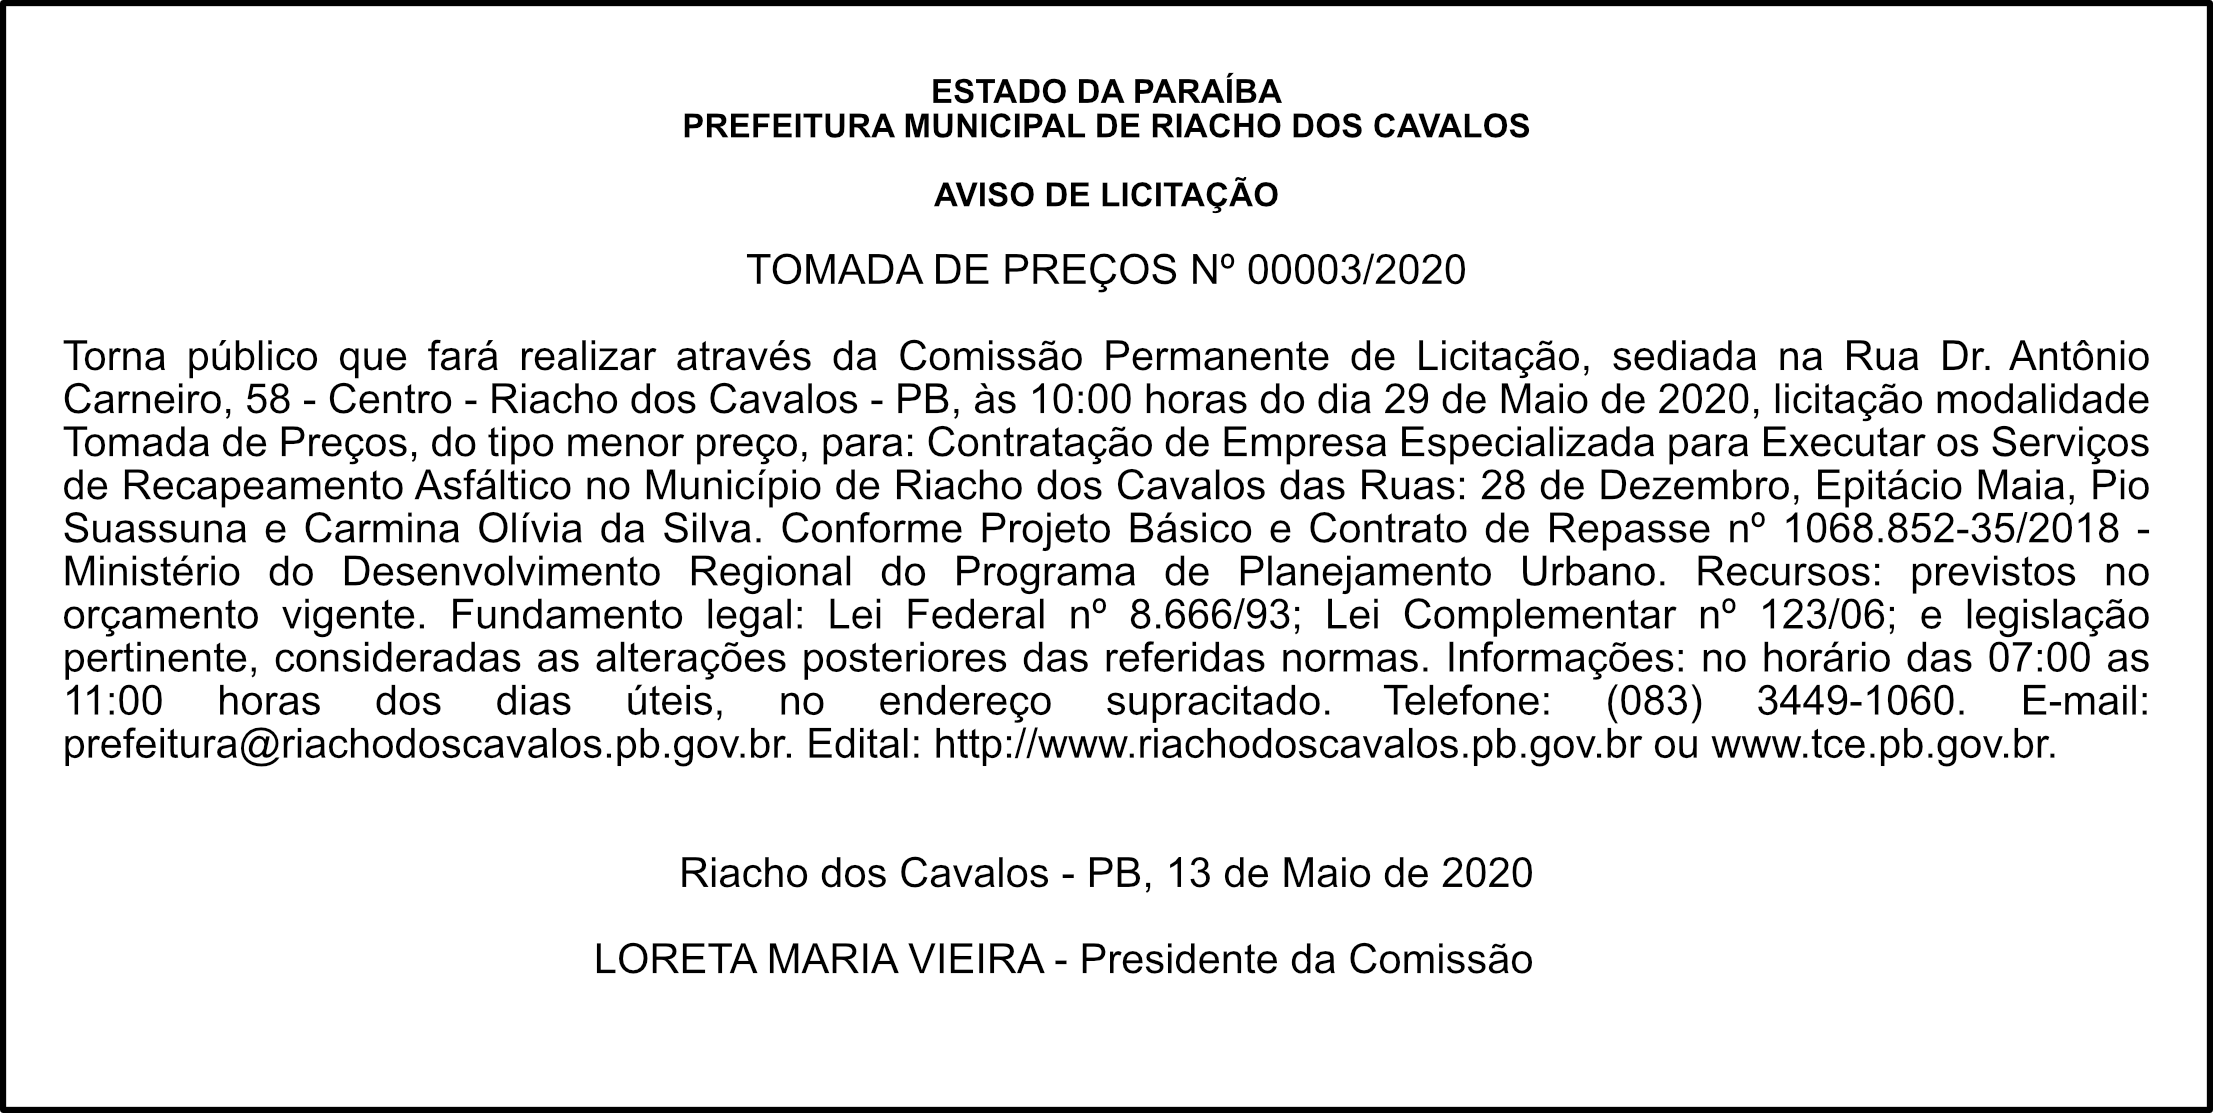 PREFEITURA MUNICIPAL DE RIACHO DOS CAVALOS – AVISO DE LICITAÇÃO – TOMADA DE PREÇOS Nº 00003/2020